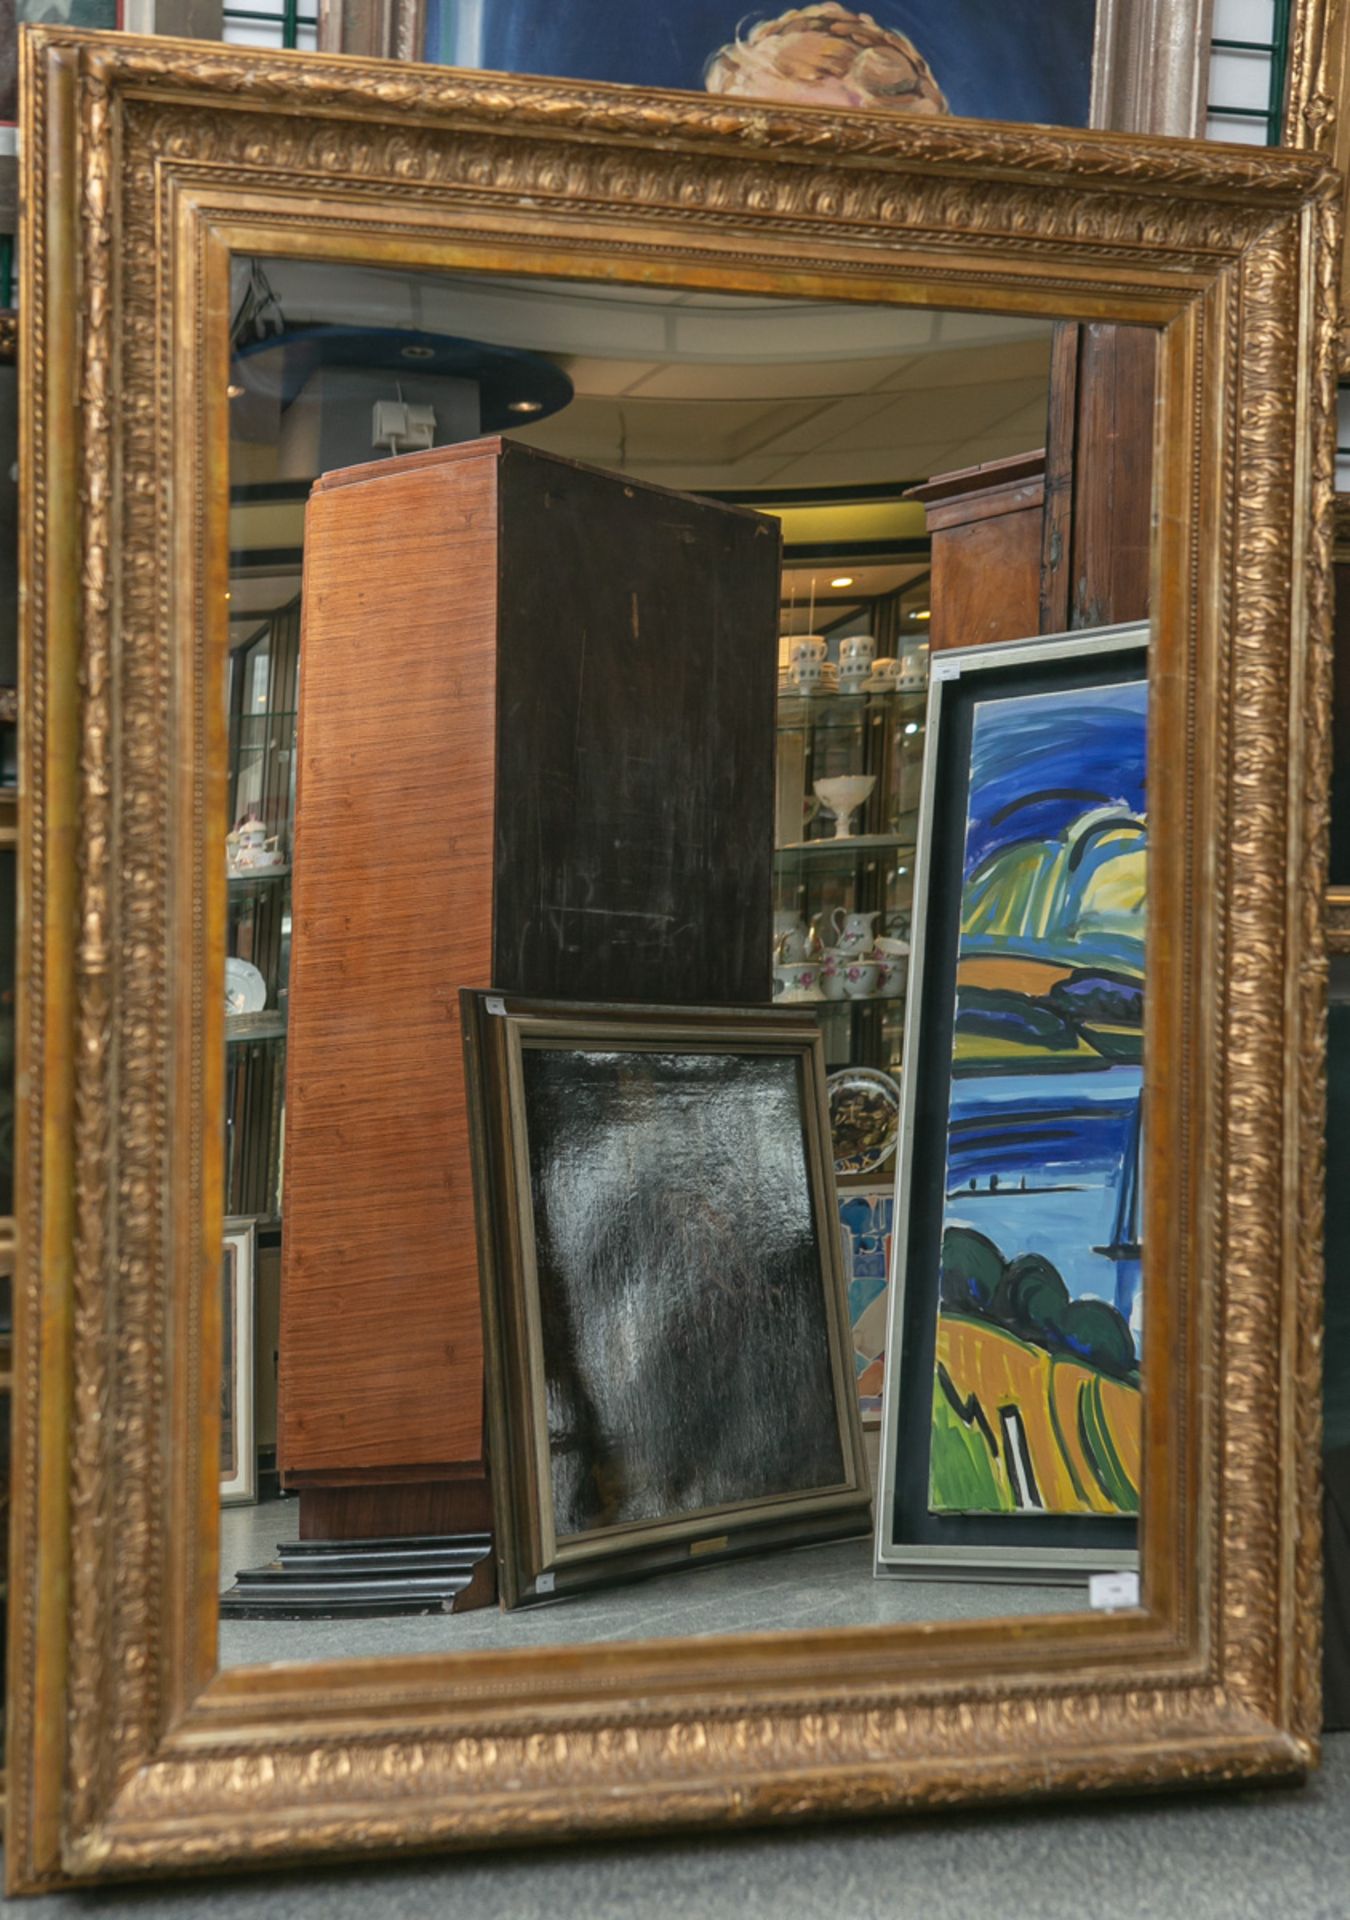 Spiegel in einer alten Gemälderahmung